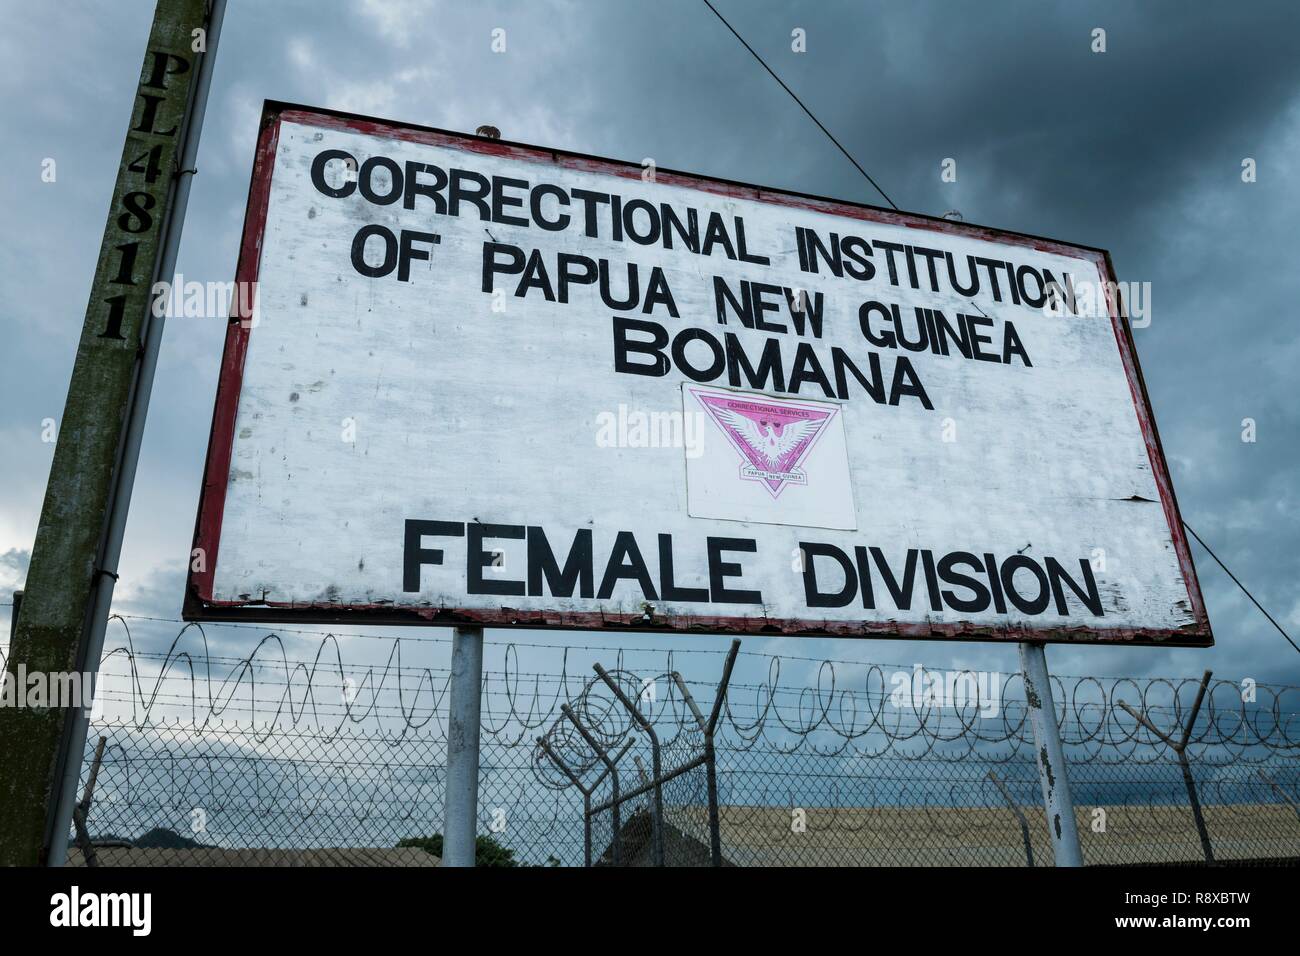 La Papouasie-Nouvelle-Guinée, Golfe de Papouasie, District de la capitale nationale, la ville de Port Moresby, la prison de Bomana, d'administration de la division féminine Banque D'Images